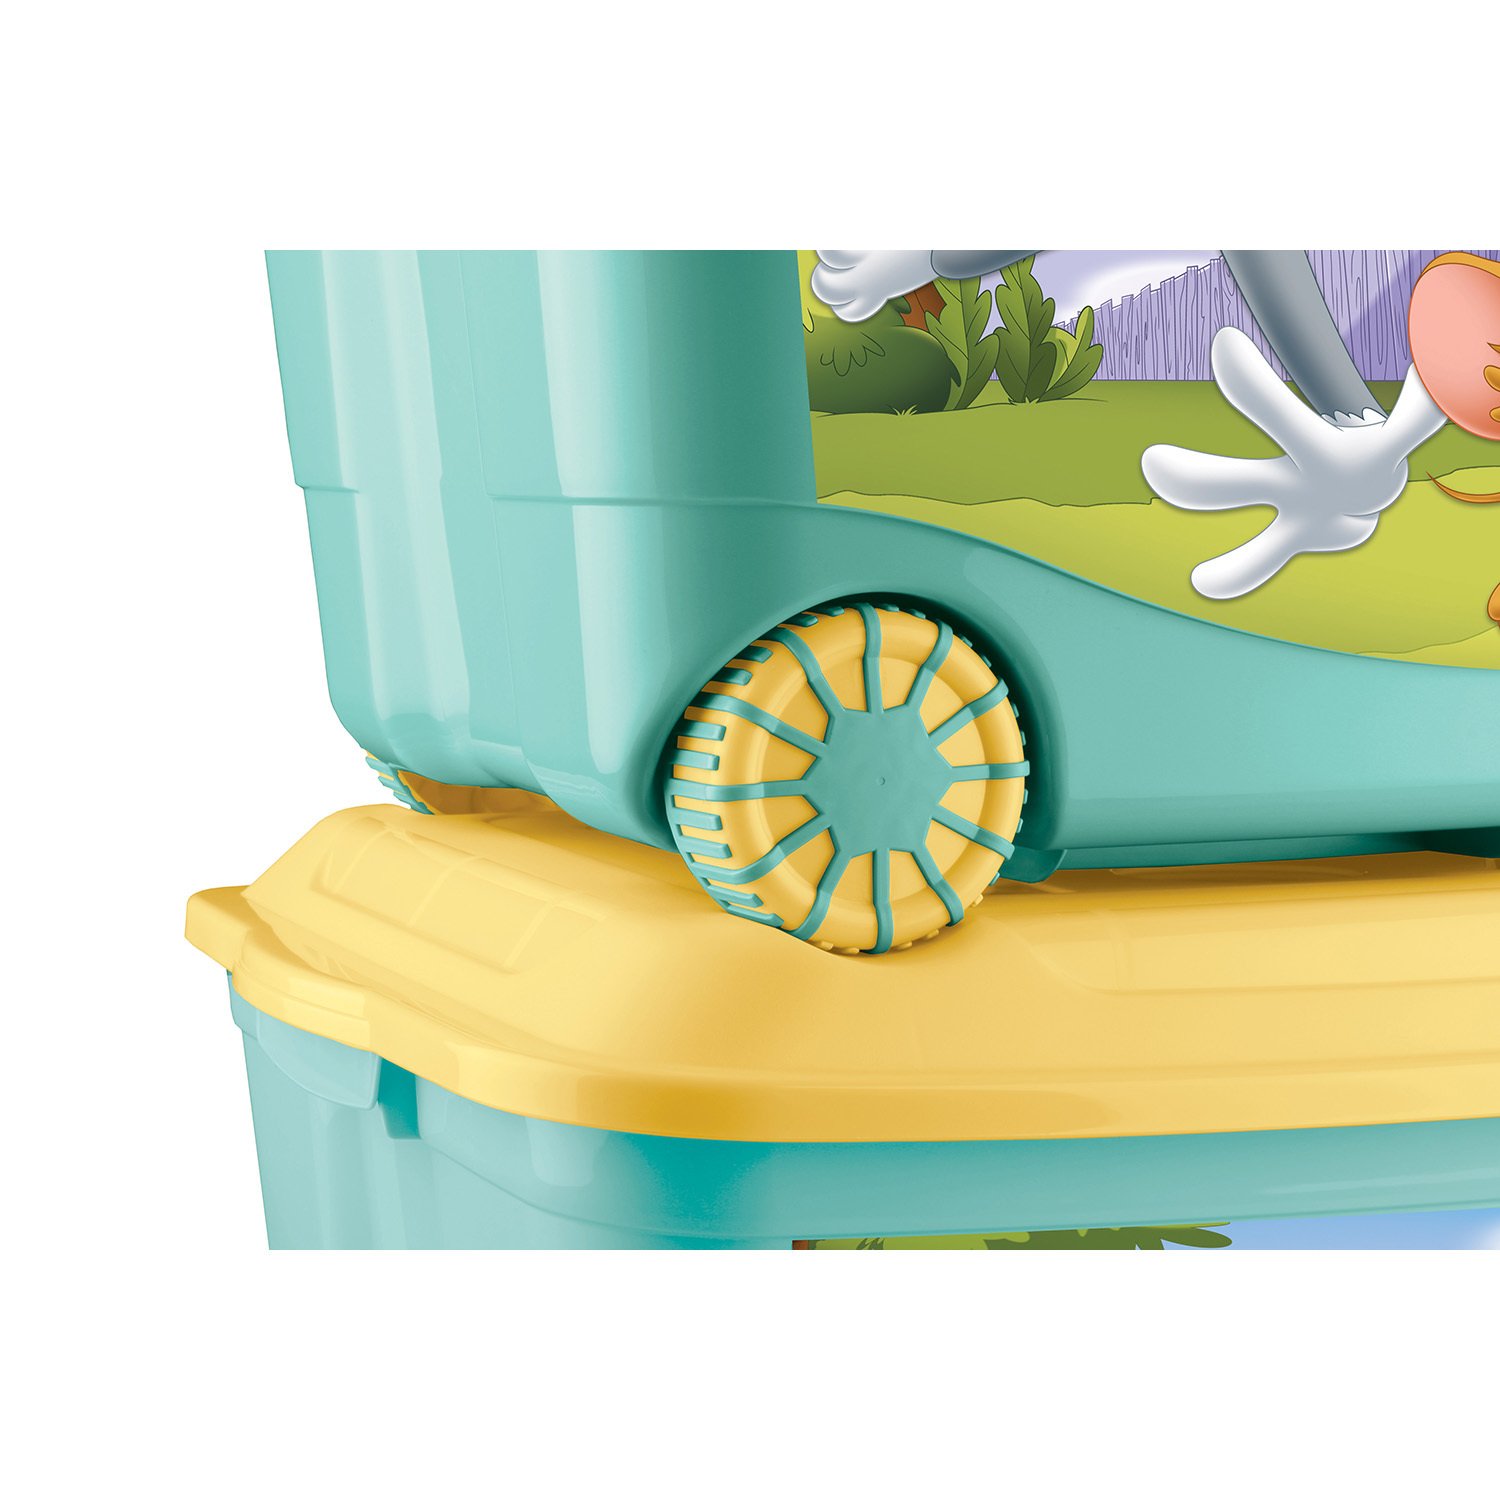 Ящик для игрушек на колесах с аппликацией - Том и Джерри, зеленый  